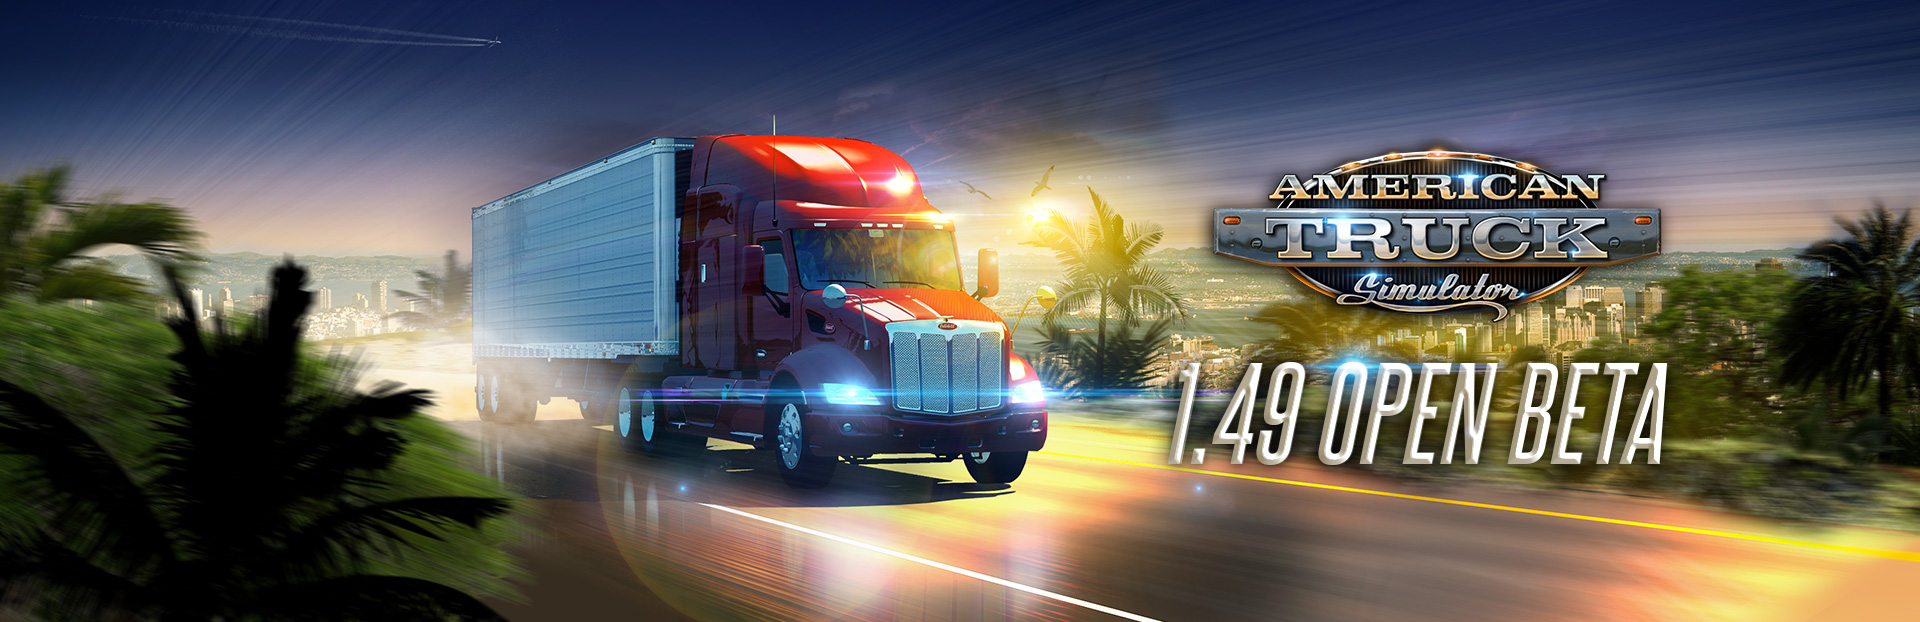 American Truck Simulator – 1.49 Açık Beta Başladı!